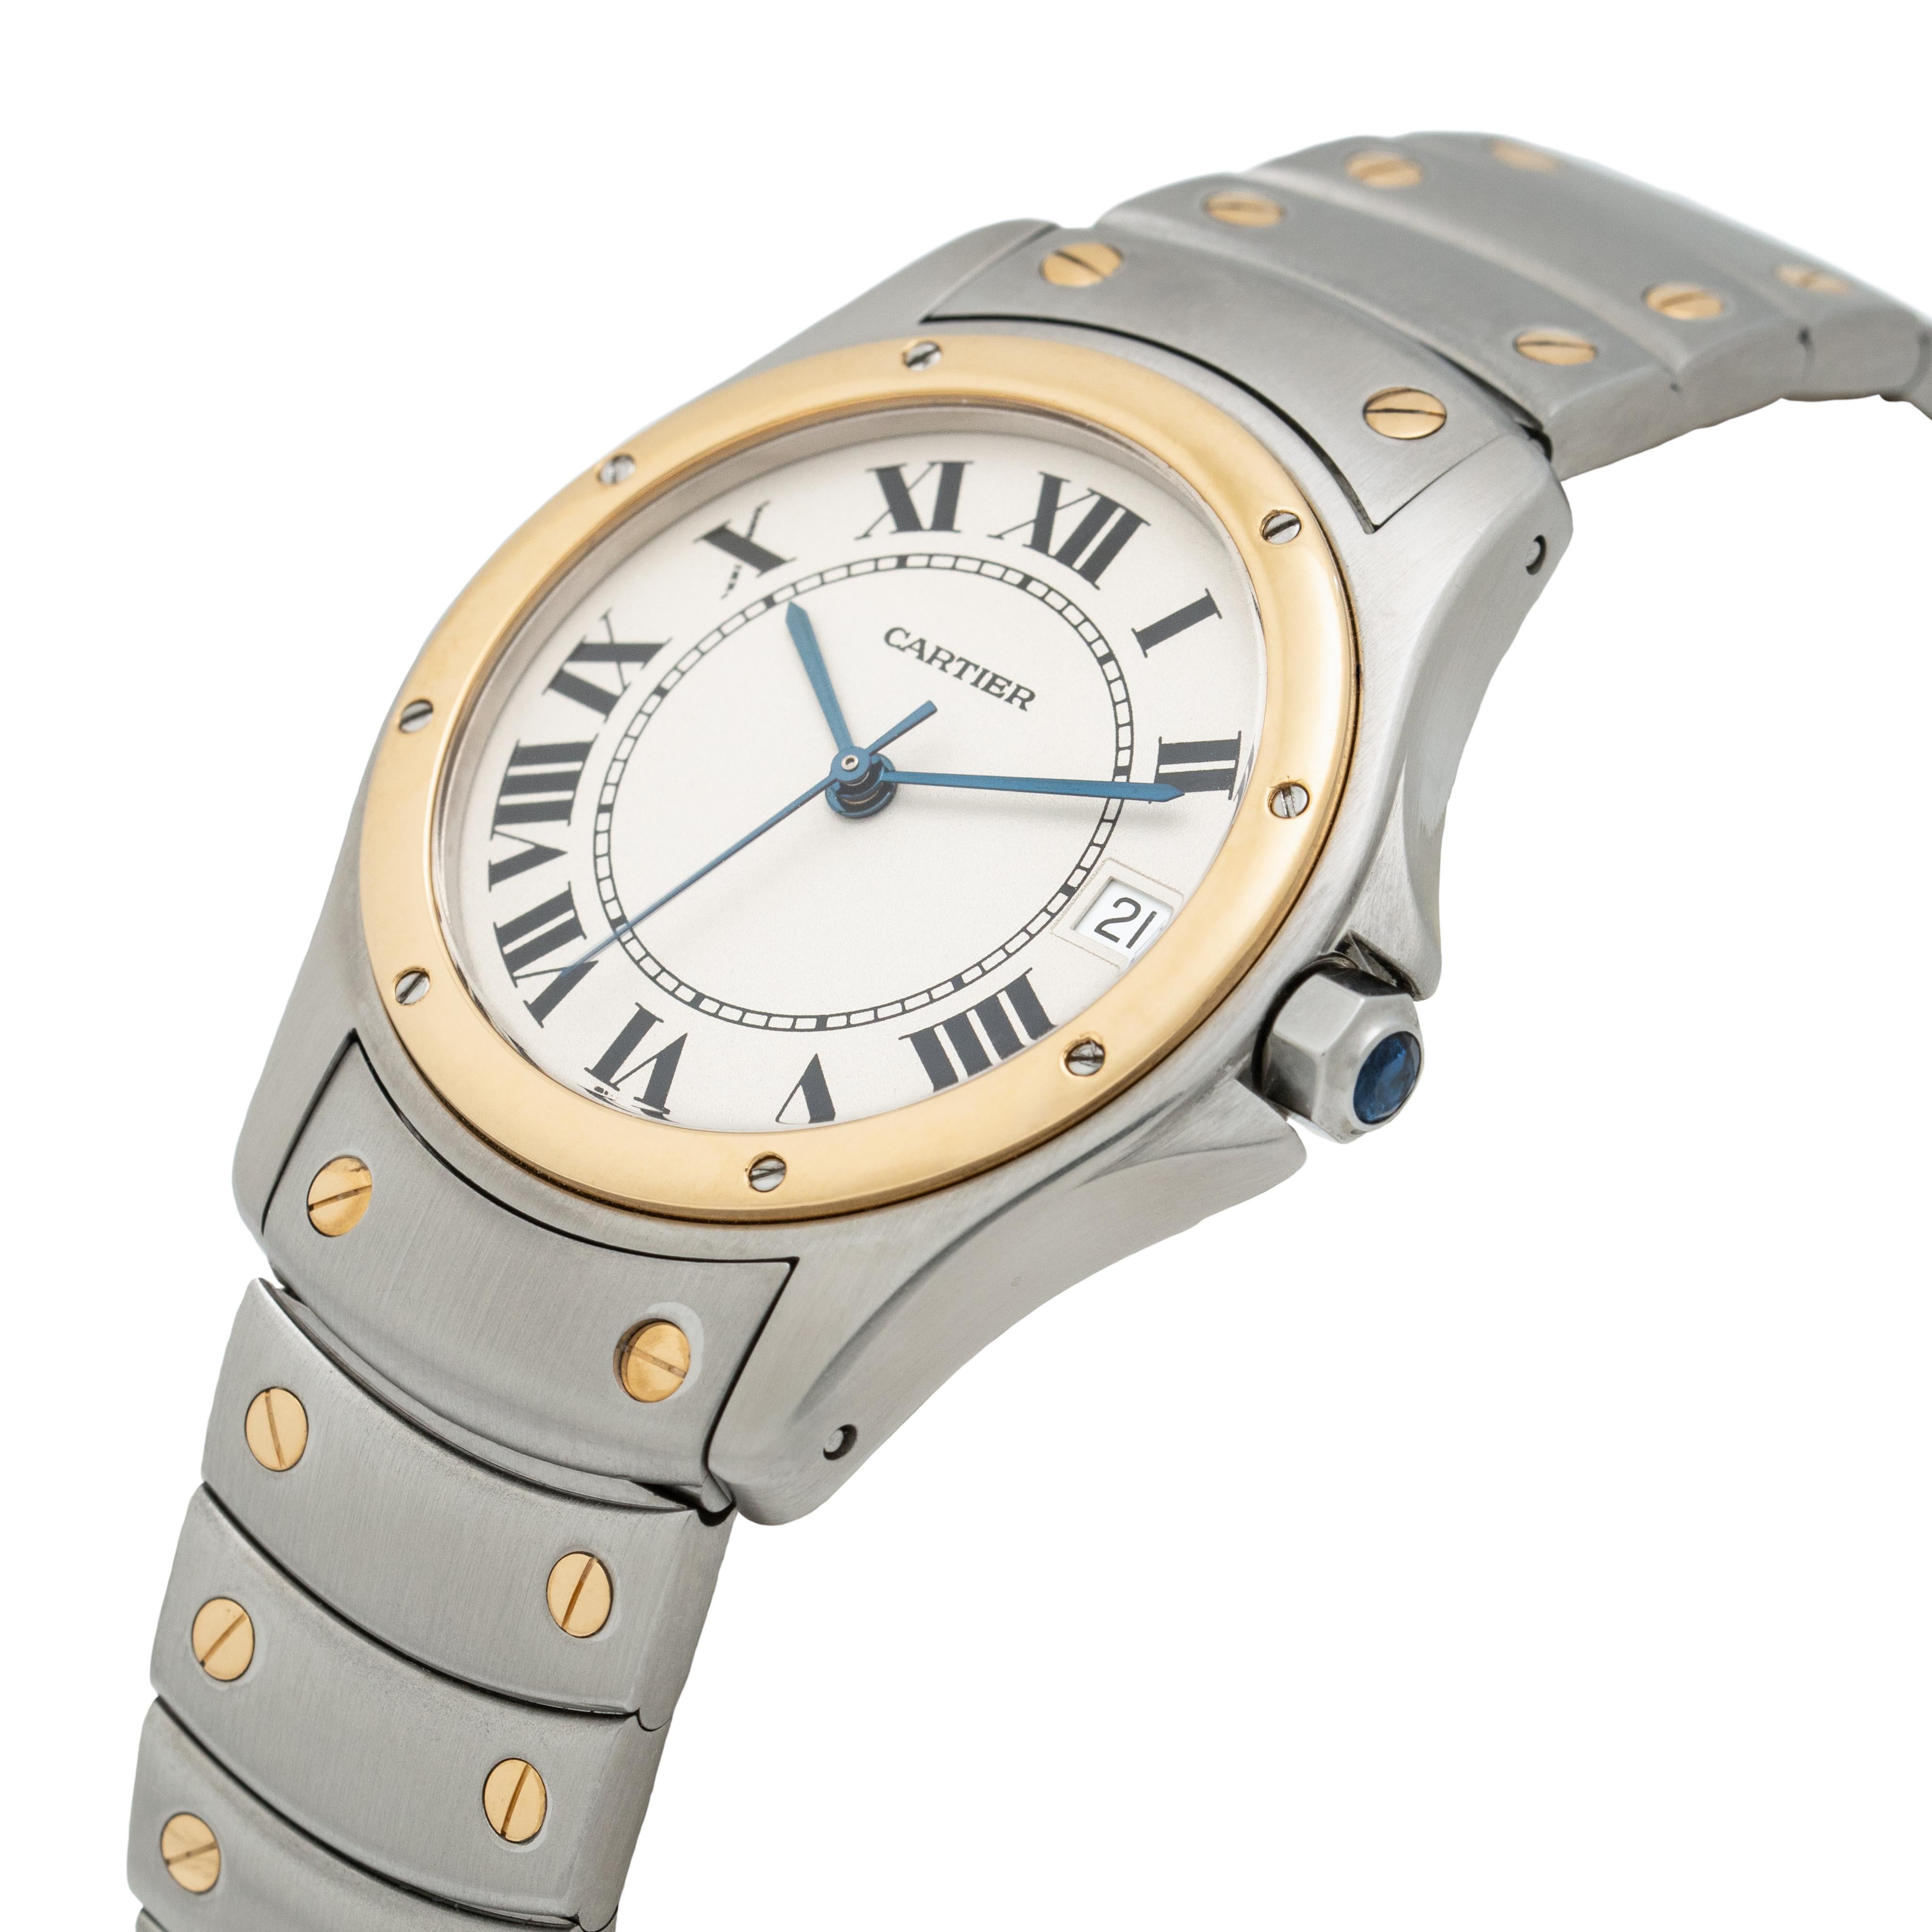 Cartier Santos Ronde 
18k Gelbgold und Edelstahl
c.1990er Jahre
Modell 1910
33mm Zifferblatt
Automatisches Uhrwerk

Stephanie Windsor garantiert die einwandfreie Funktion dieses Uhrenmechanismus für EIN Jahr ab Kaufdatum. Wir garantieren, dass